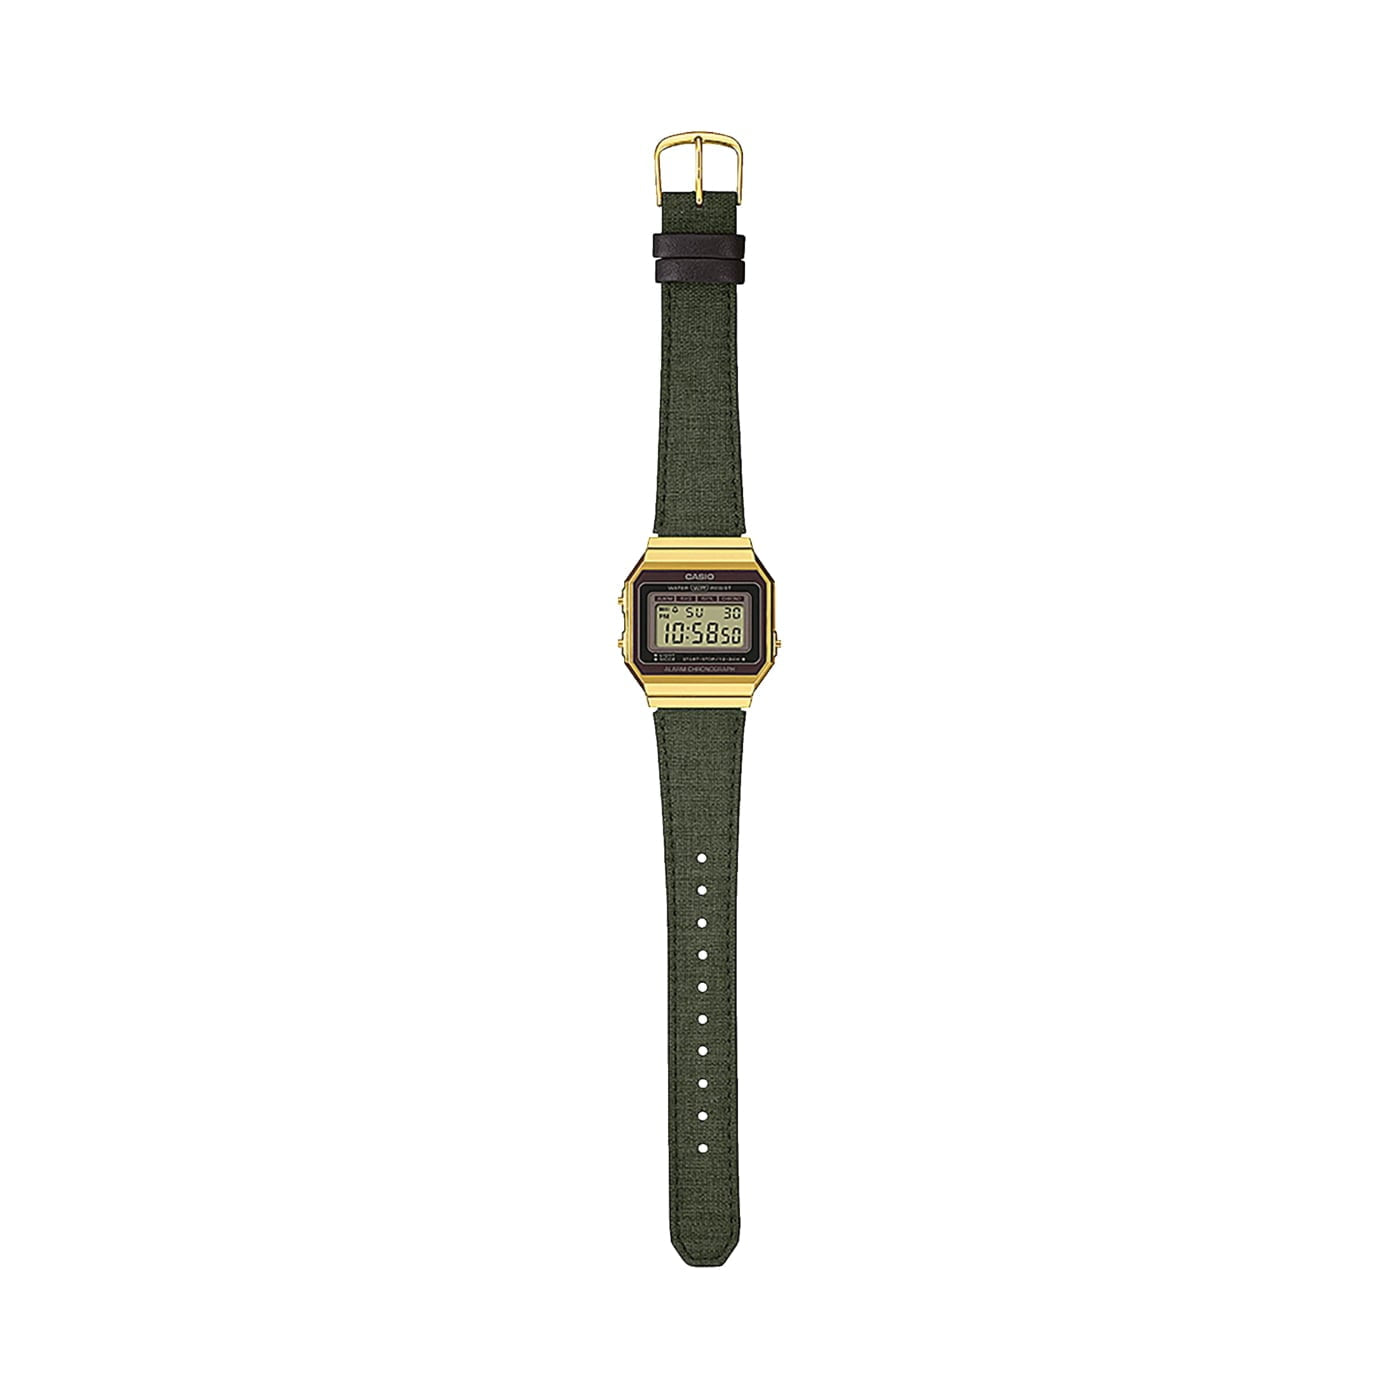 Casio A700WEGL-3AEF watch